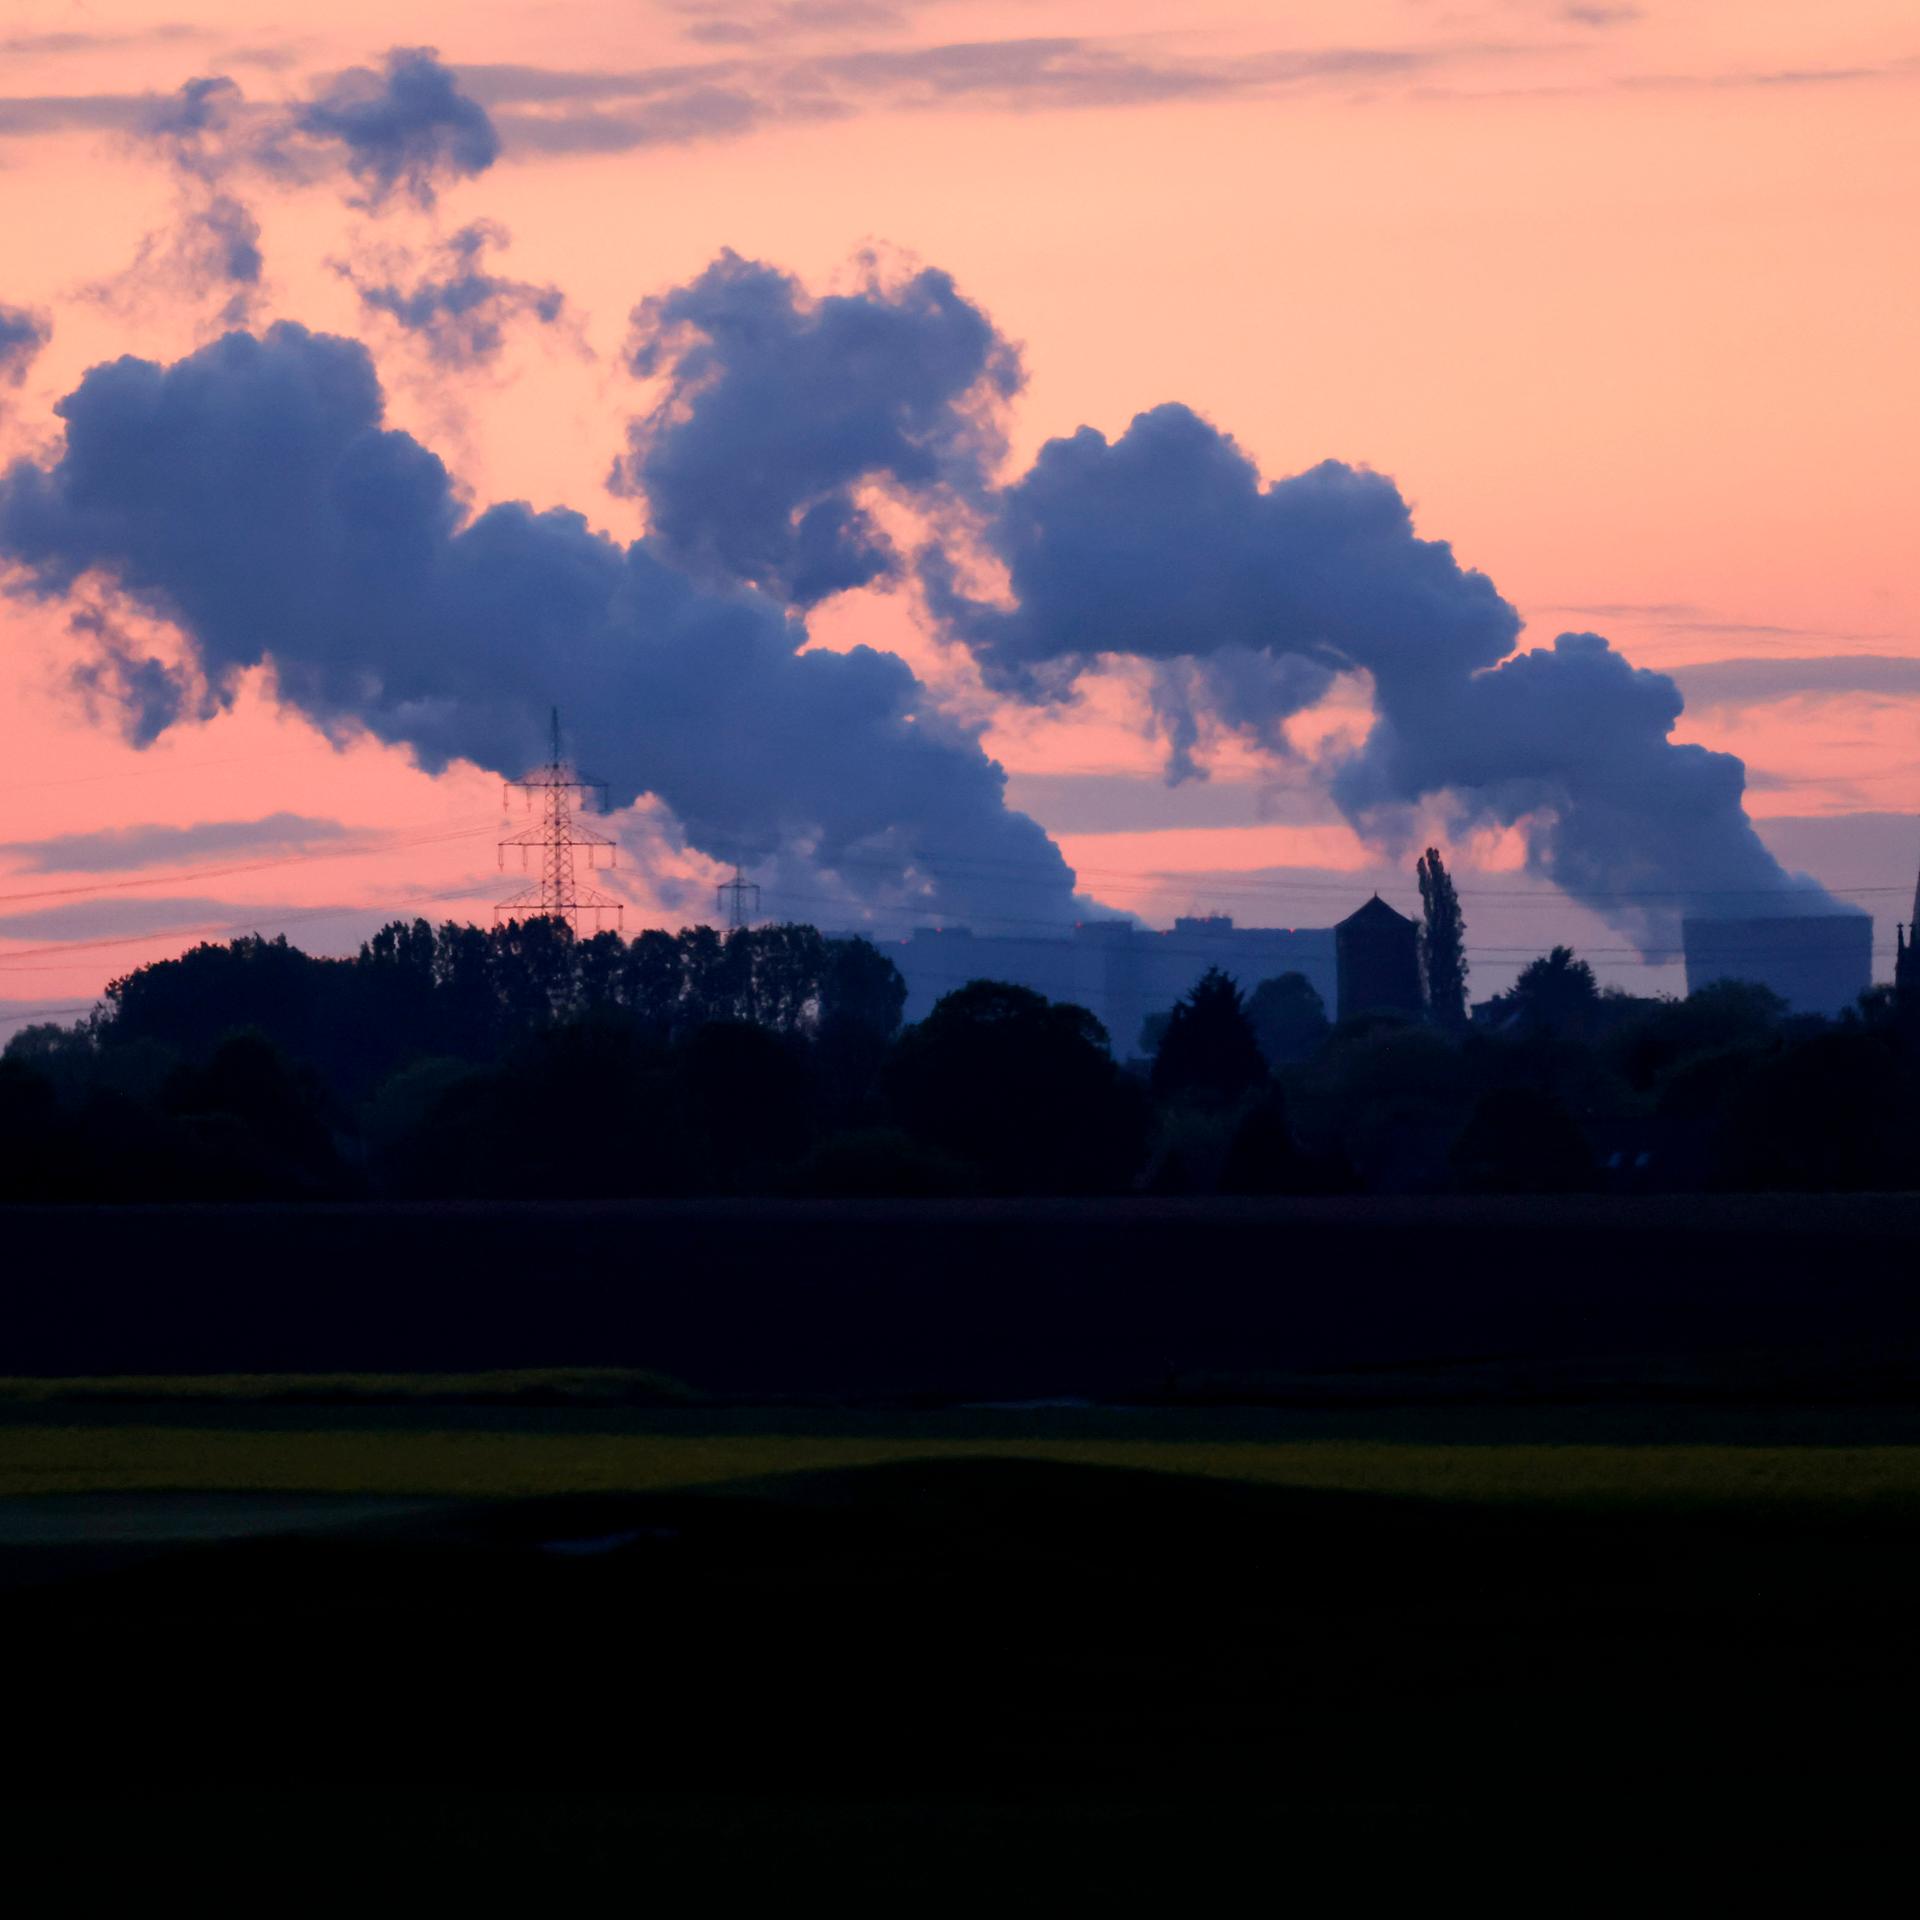 Kohleausstieg der G7 - Kommentar: Als Nächstes muss der Gas- und Öl-Ausstieg folgen